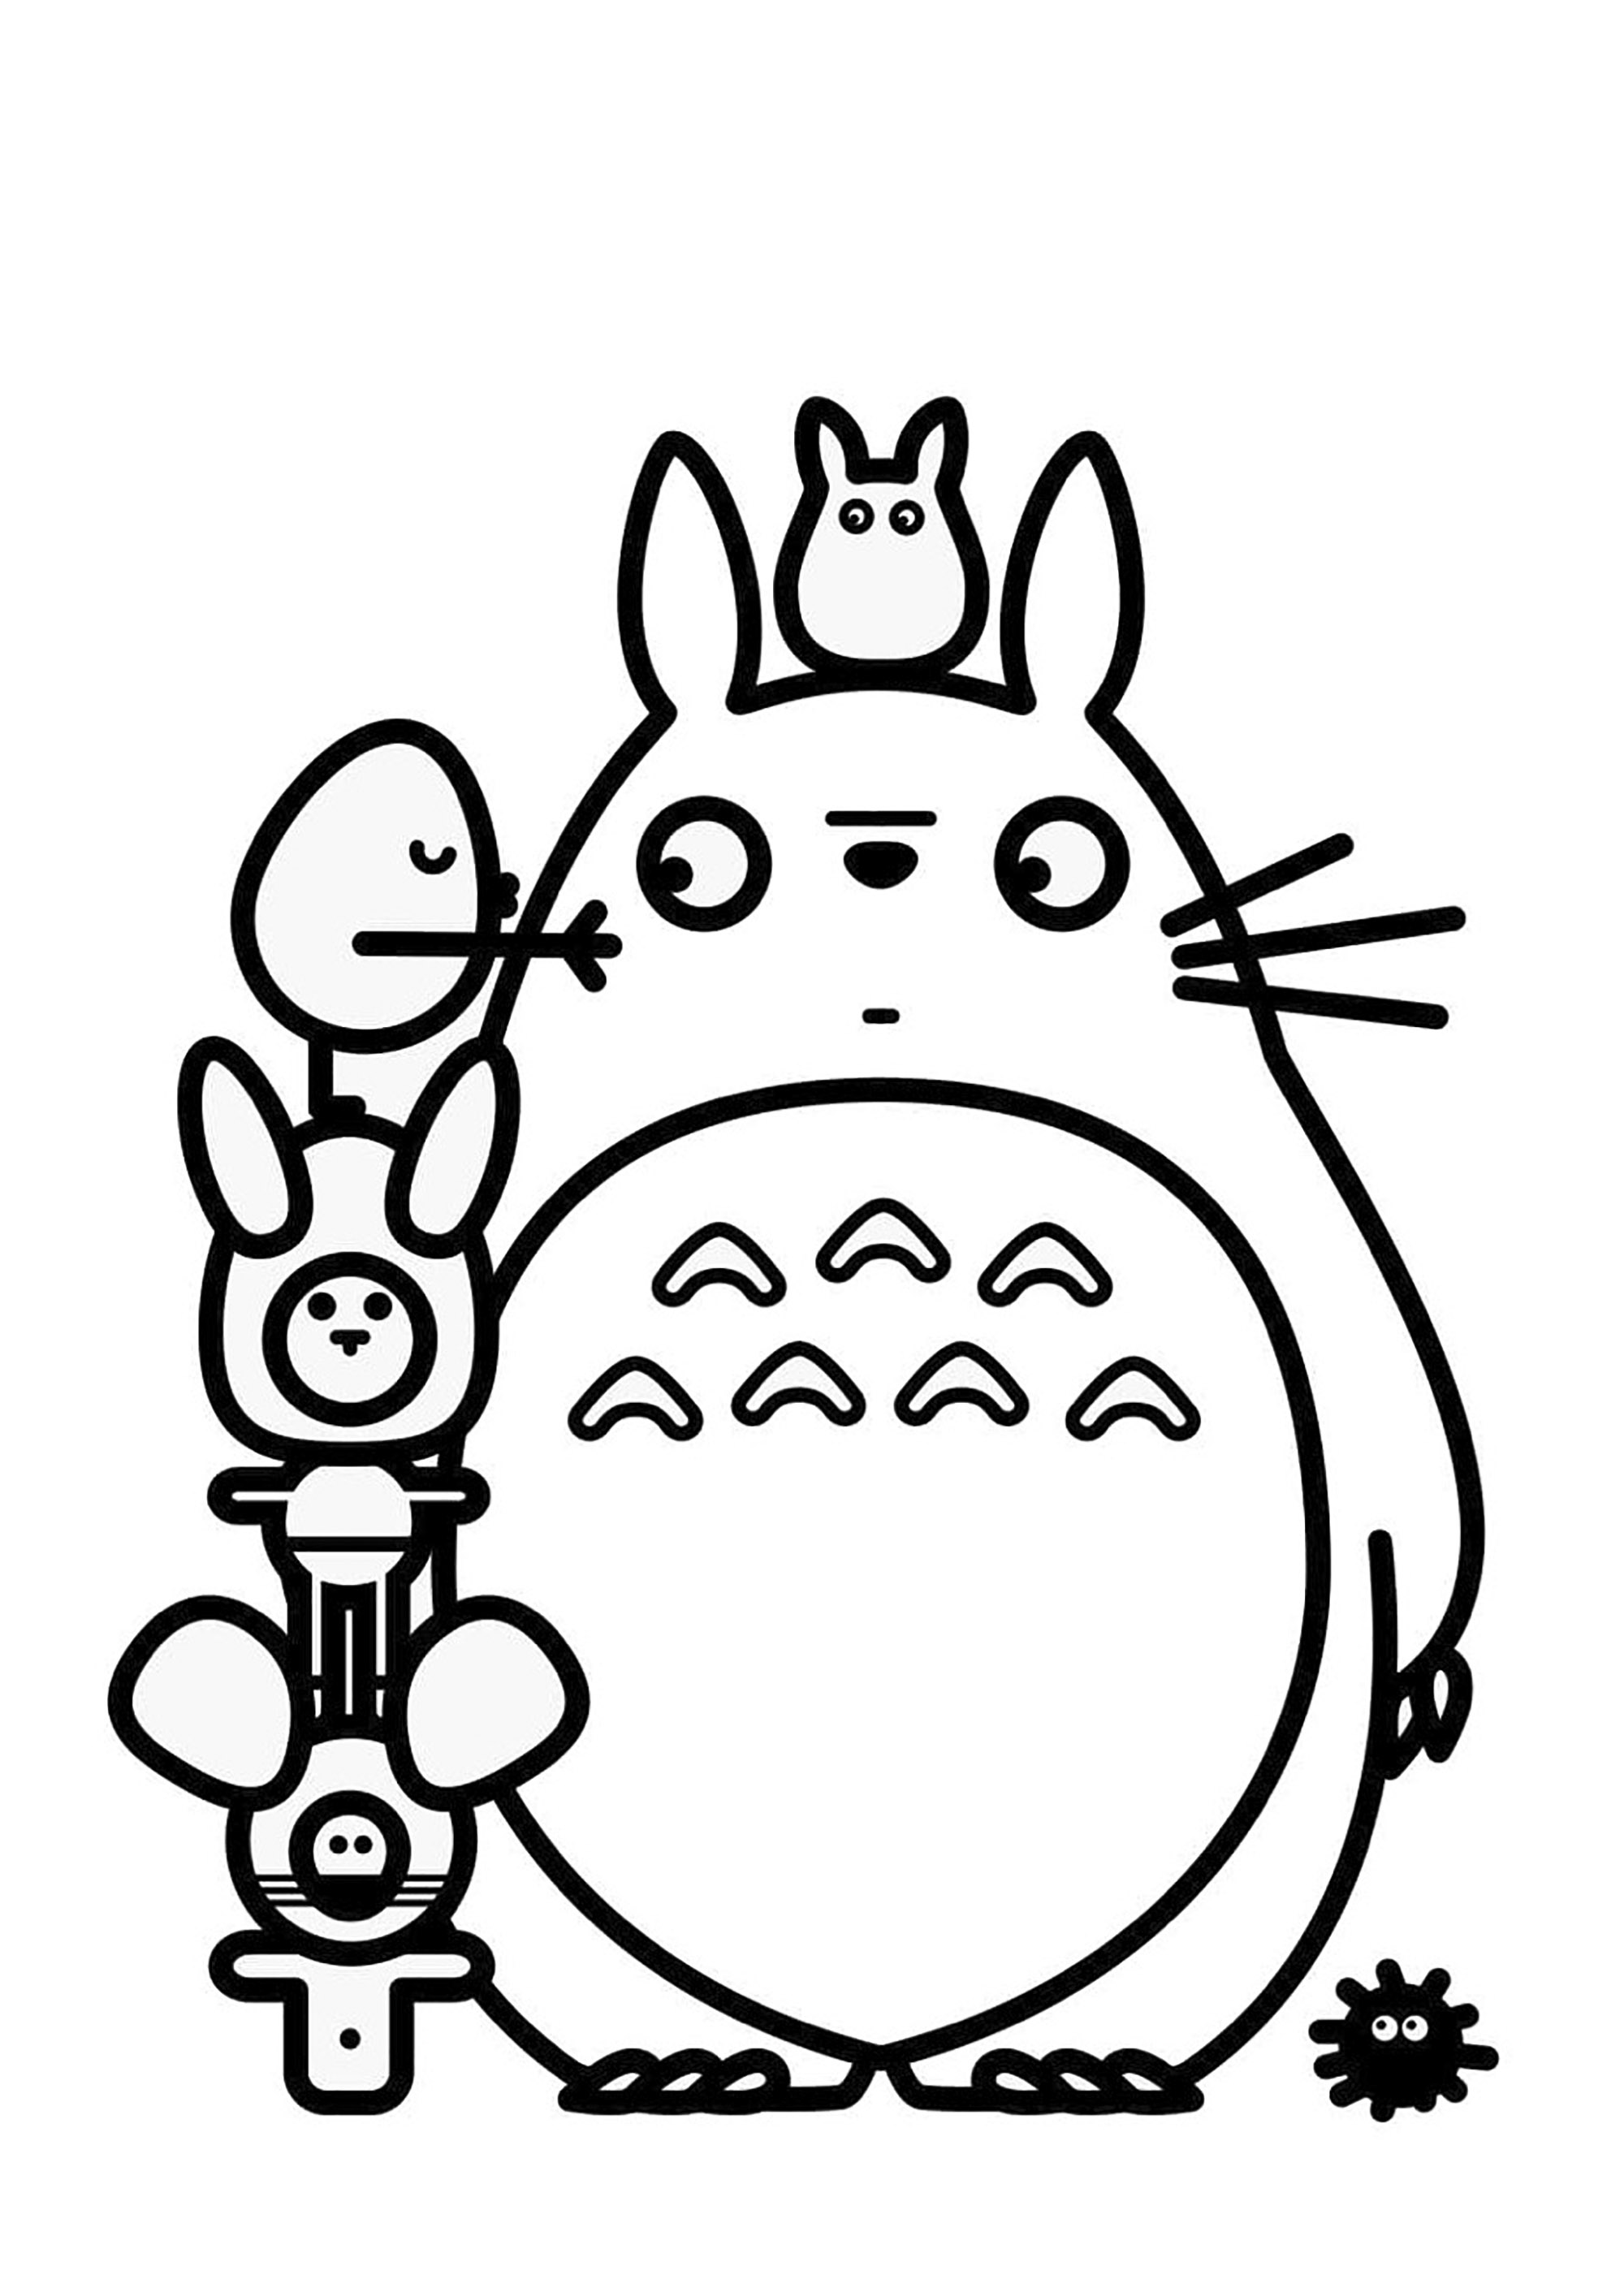 Coloriage de Totoro avec lignes épaisses. Totoro est un personnage de fiction créé en 1988 par Hayao Miyazaki du studio Ghibli, pour le film Mon voisin Totoro